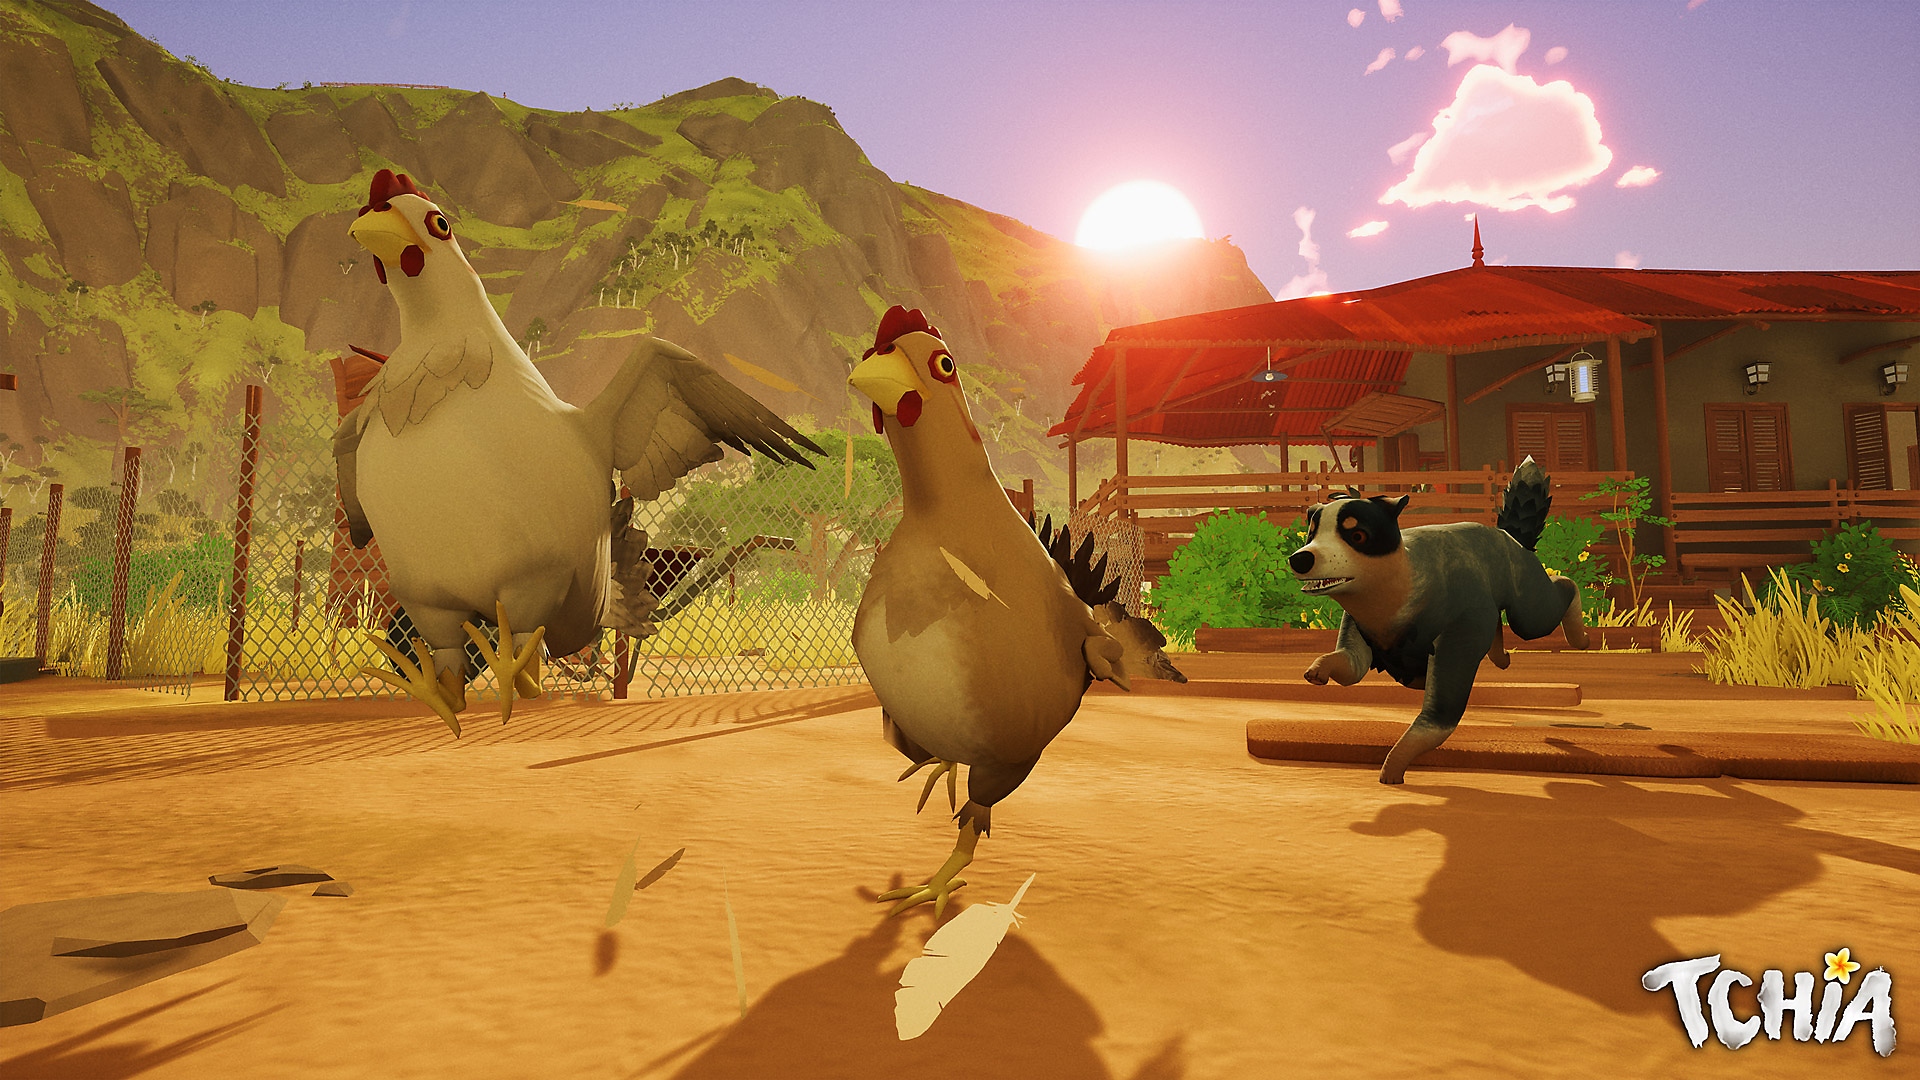 Snimka zaslona iz igre Tchia prikazuje psa koji trči za kokošima